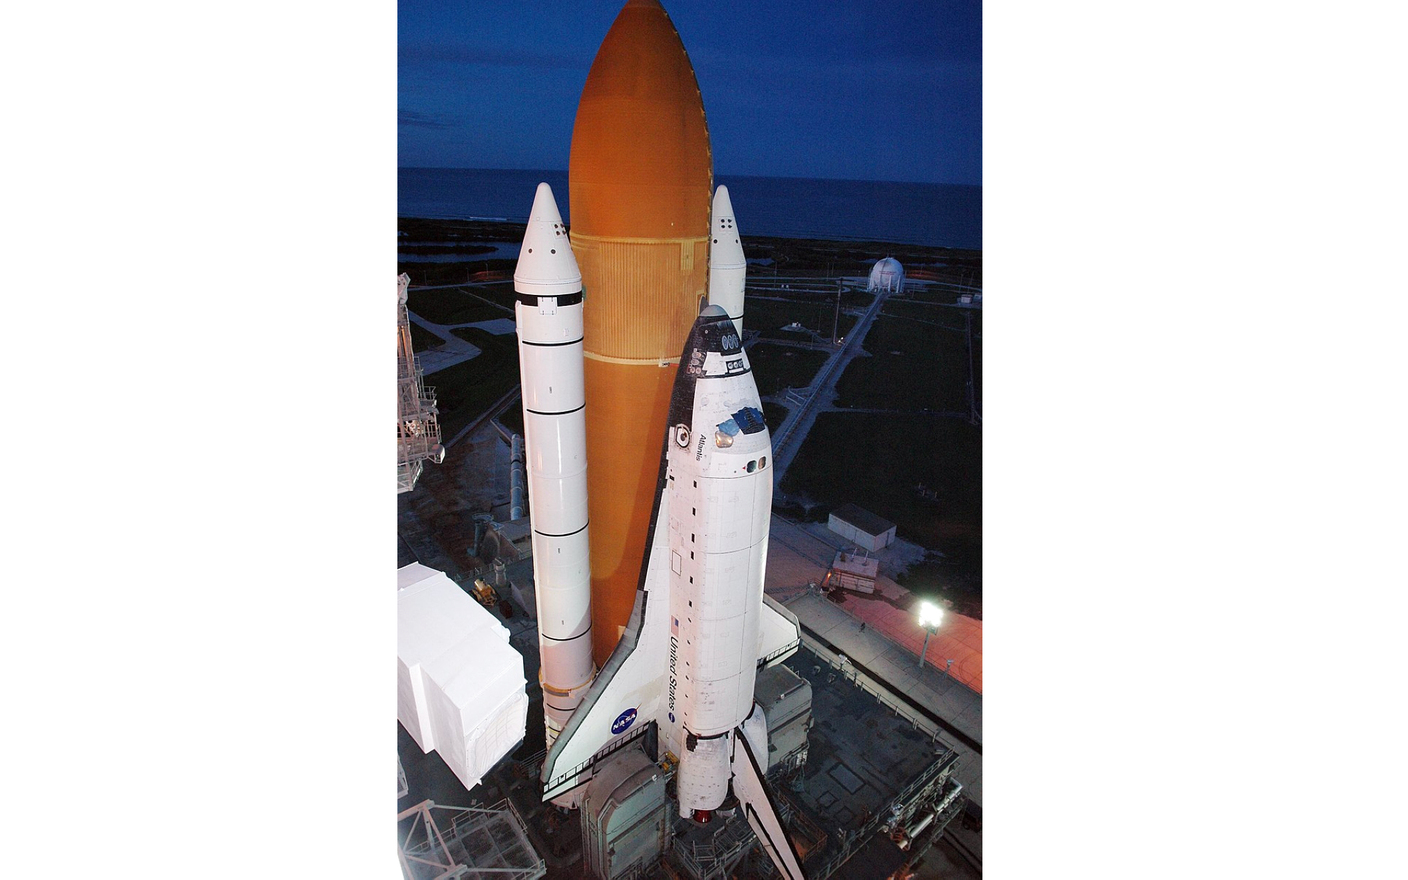 الصورة : 2009 مكوك الفضاء أتلانتس ينطلق برحلة لإصلاح تلسكوب فضاء في المهمة «STS - 125».